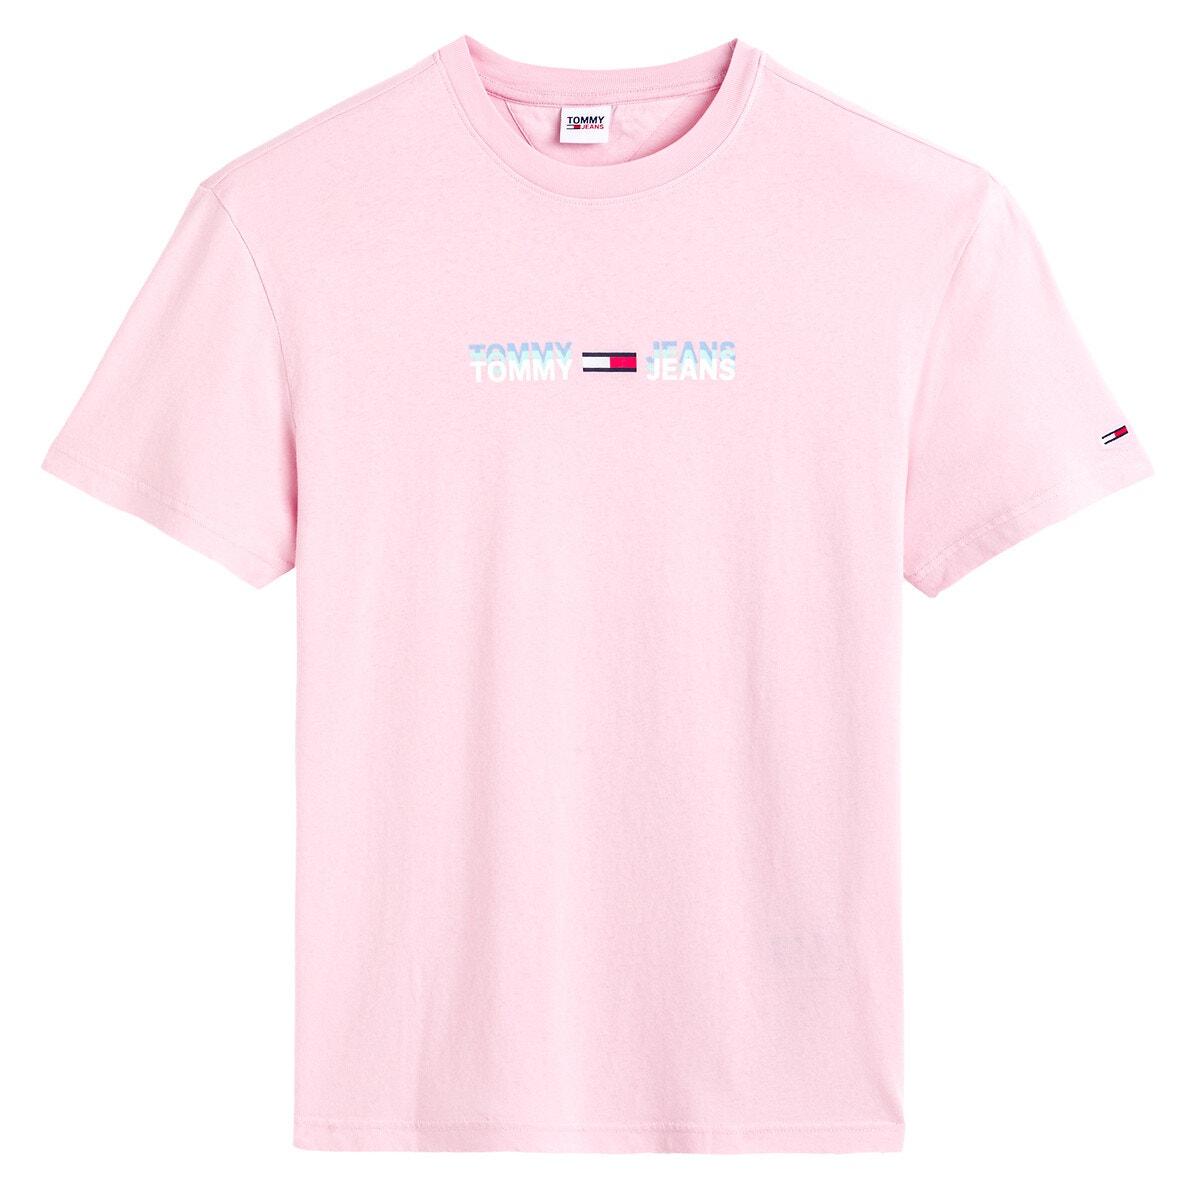 ΑΝΔΡΑΣ | Μπλούζες & Πουκάμισα | T-shirts Κοντομάνικο T-shirt, Tommy Linear Logo